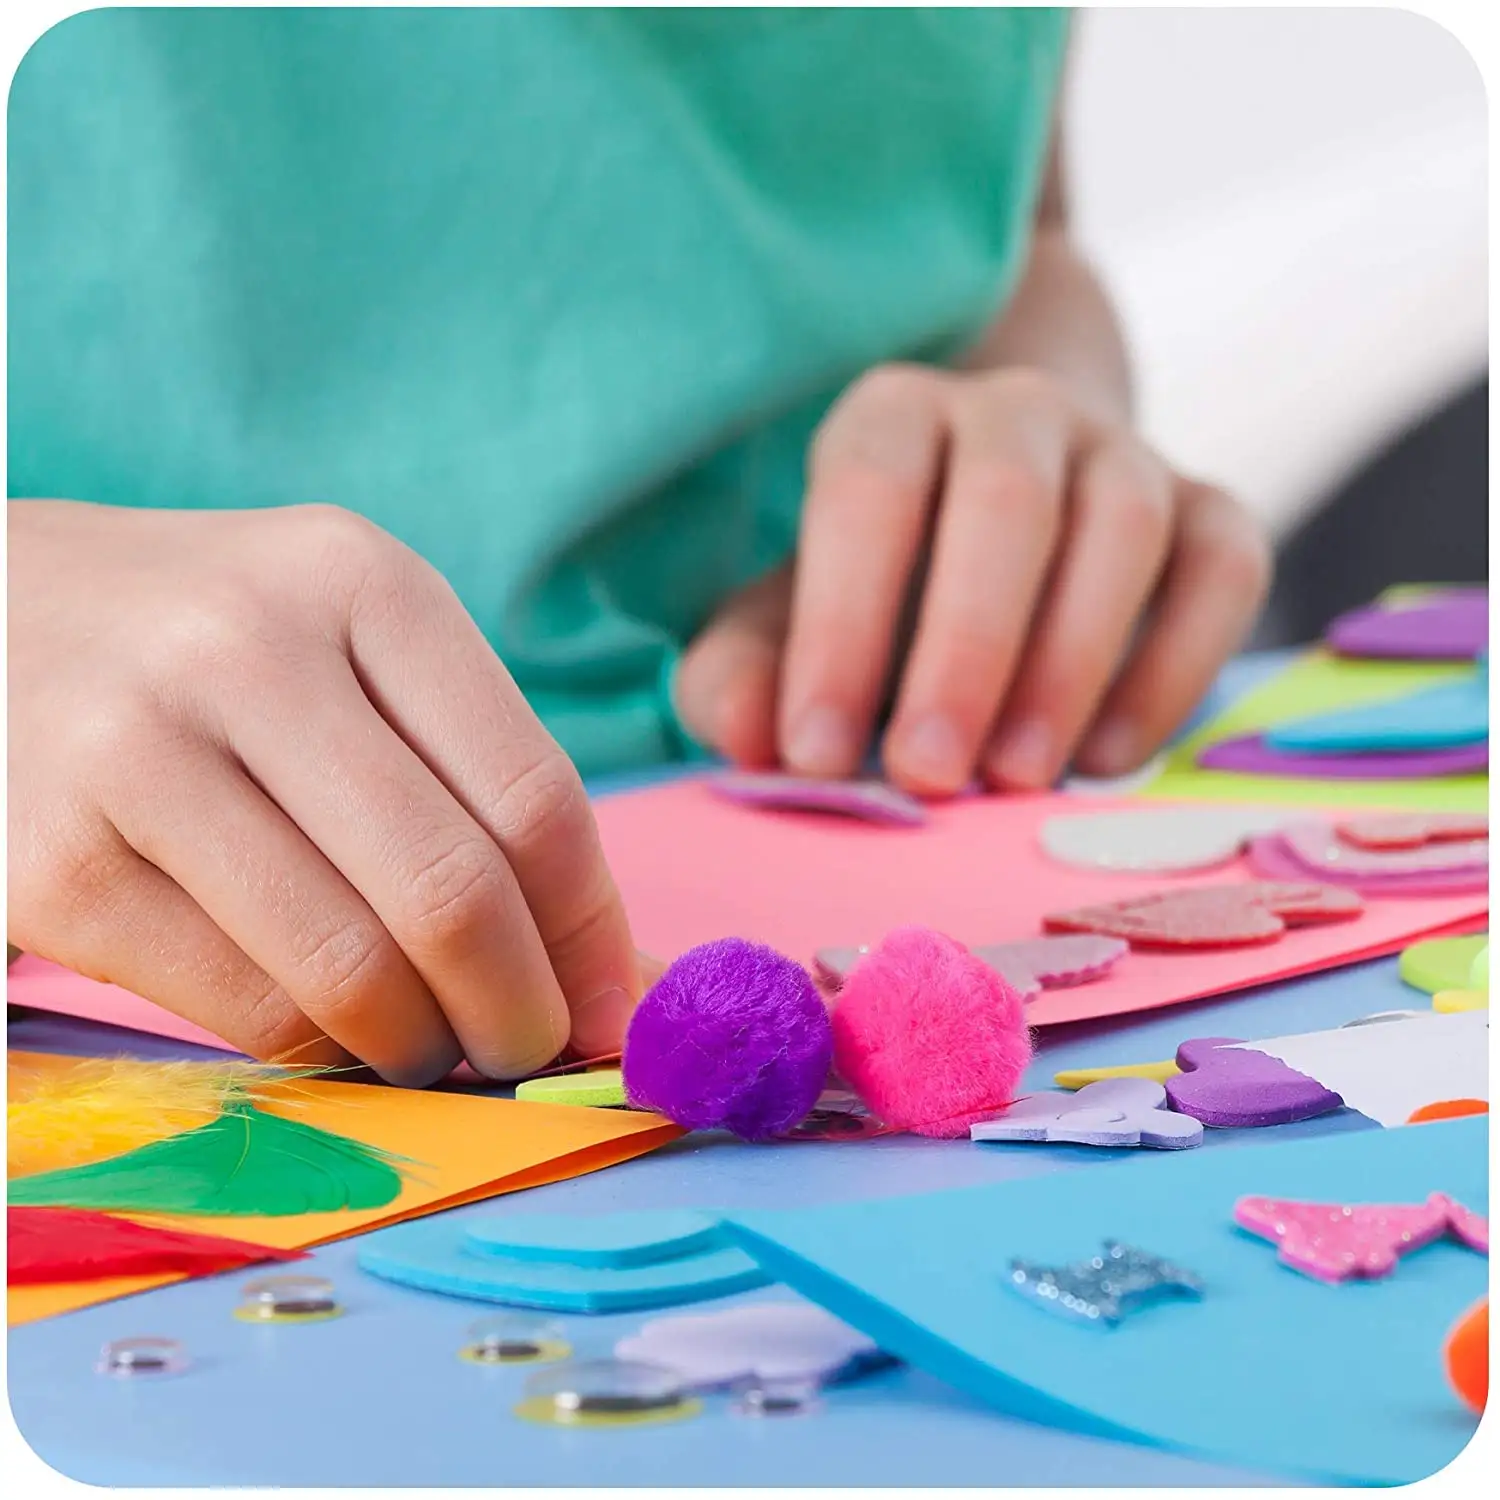 Plus de 1000 Kits d'artisanat adaptés aux filles et garçons de 4 à 12 ans Kits d'artisanat pour enfants d'âge préscolaire, projets d'activités cadeau